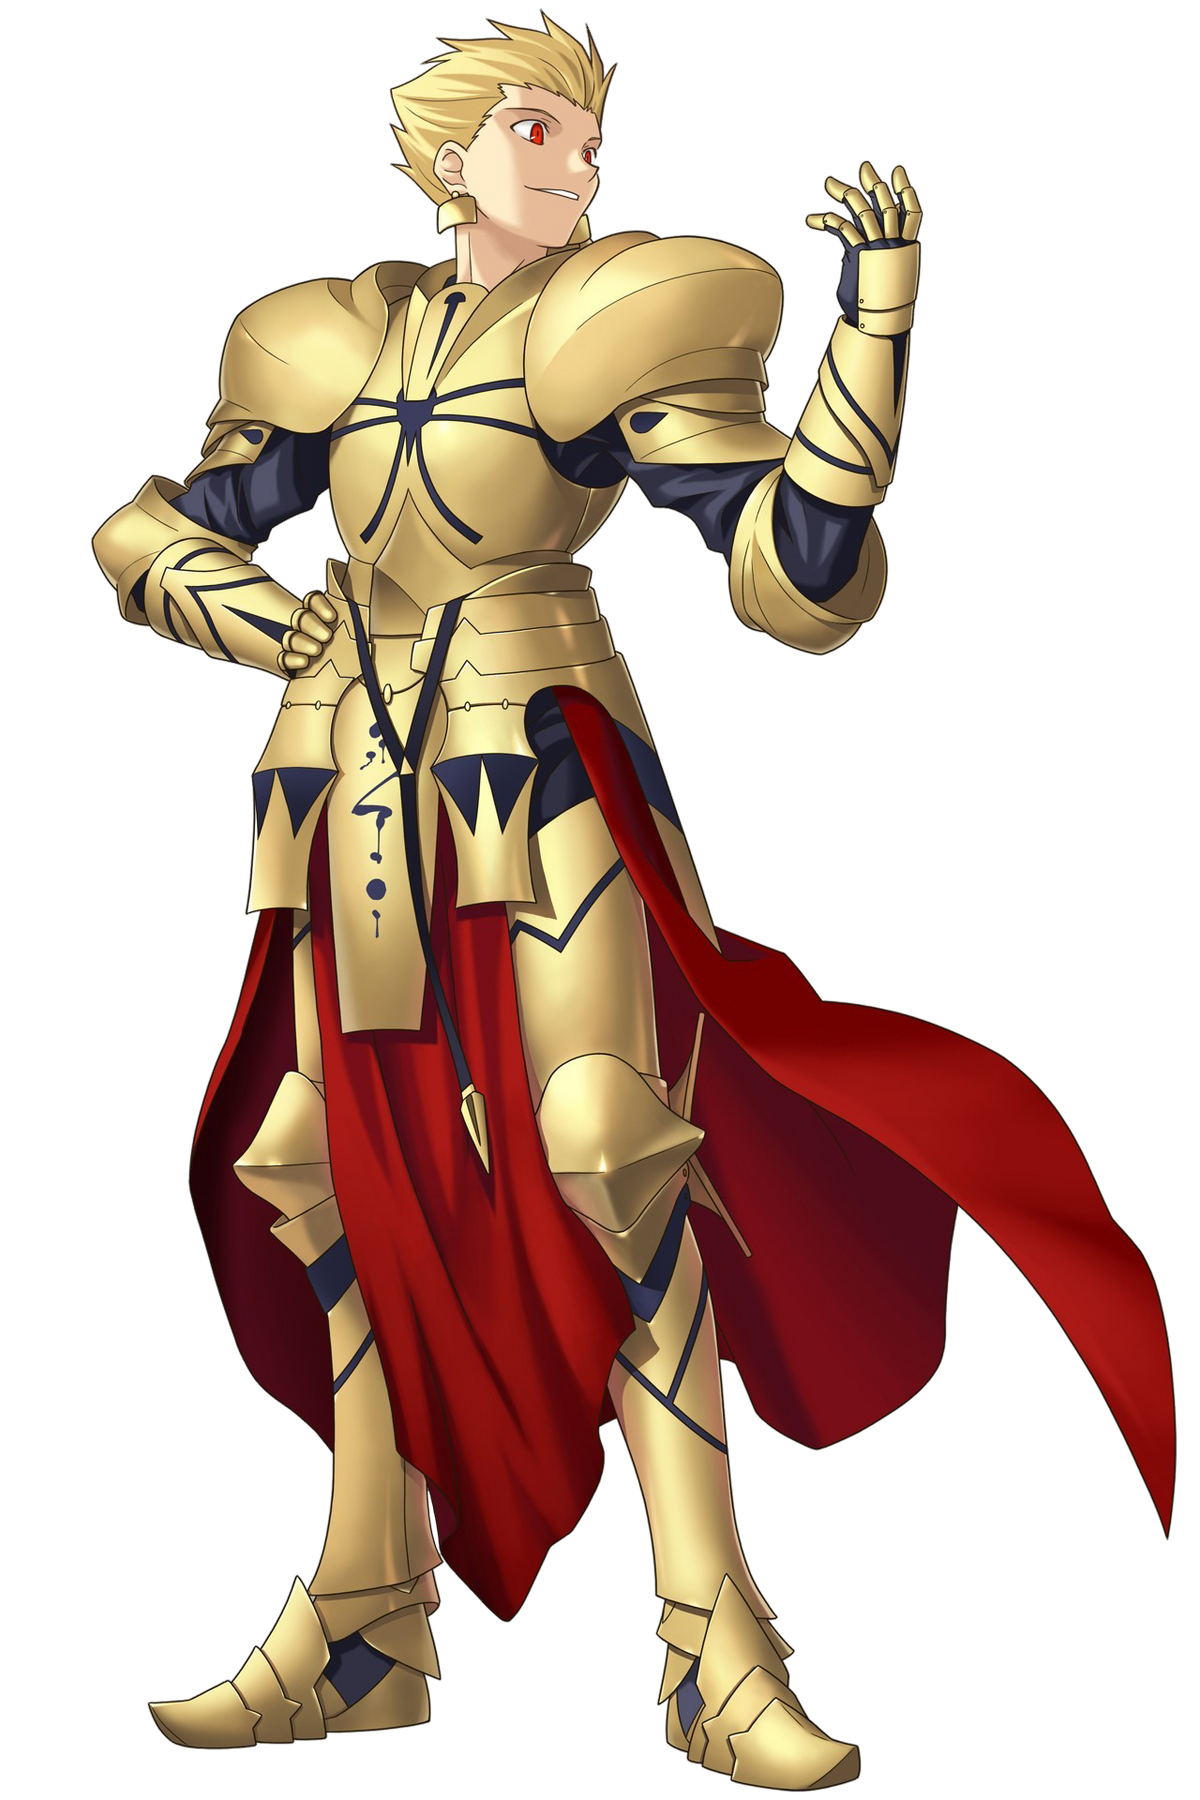 King Of Heroes é um personagem baseado em Gilgamesh